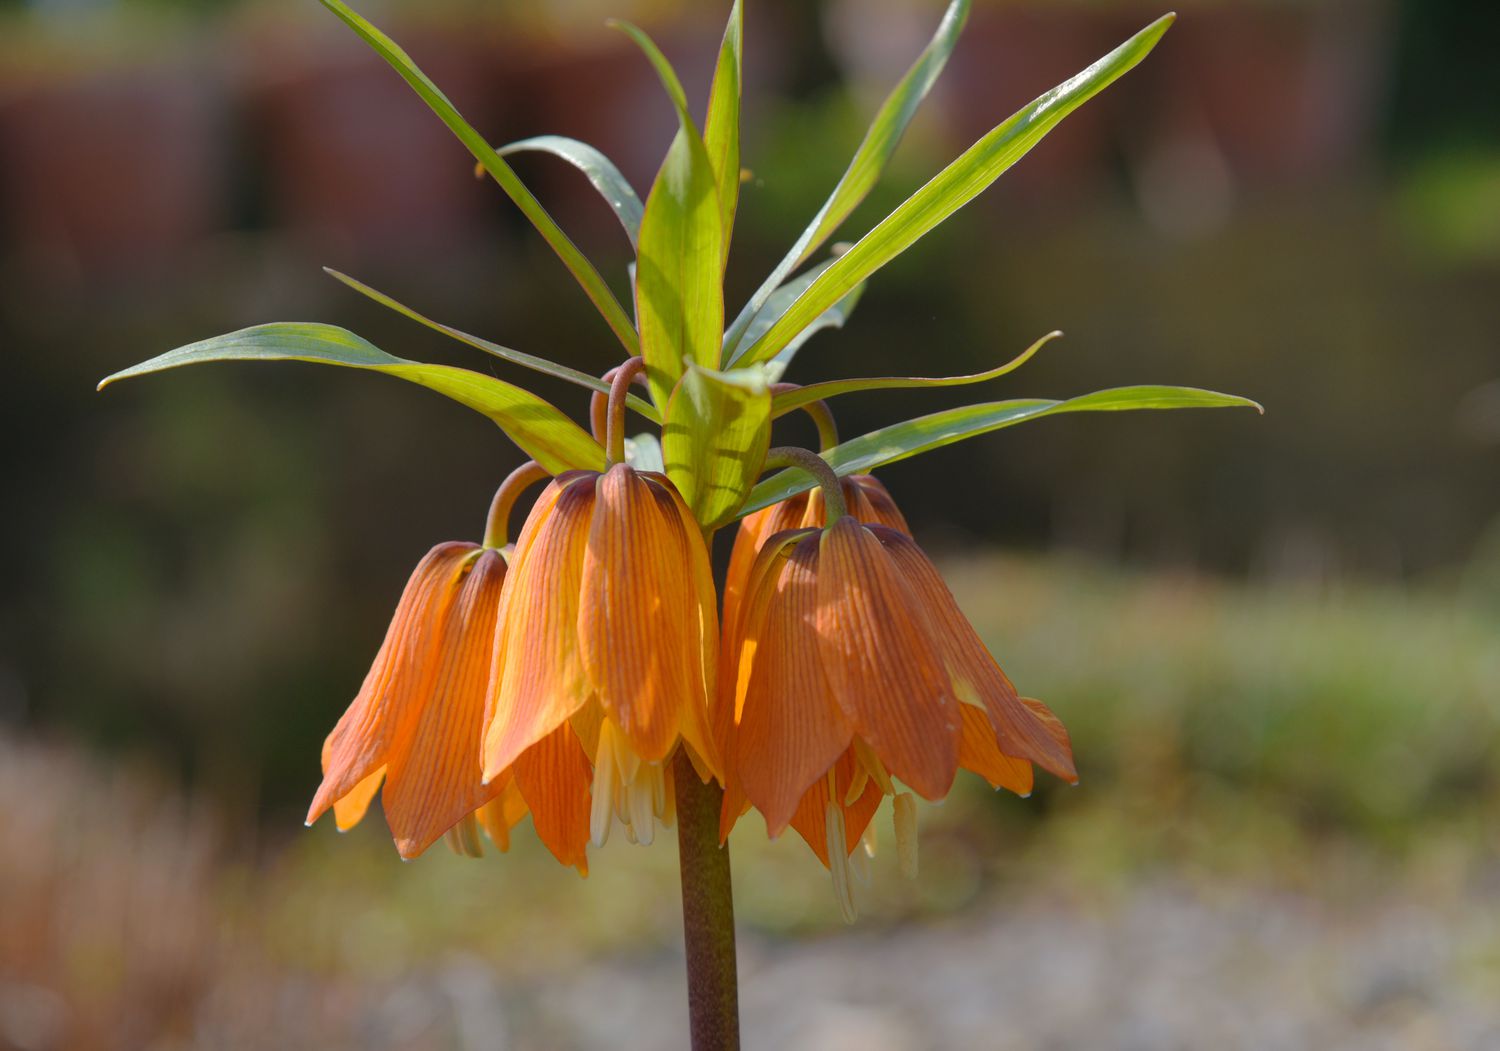 Fritillaria-Pflanze mit orange-gelben glockenförmigen Blüten, die unter langen Blättchen herabhängen